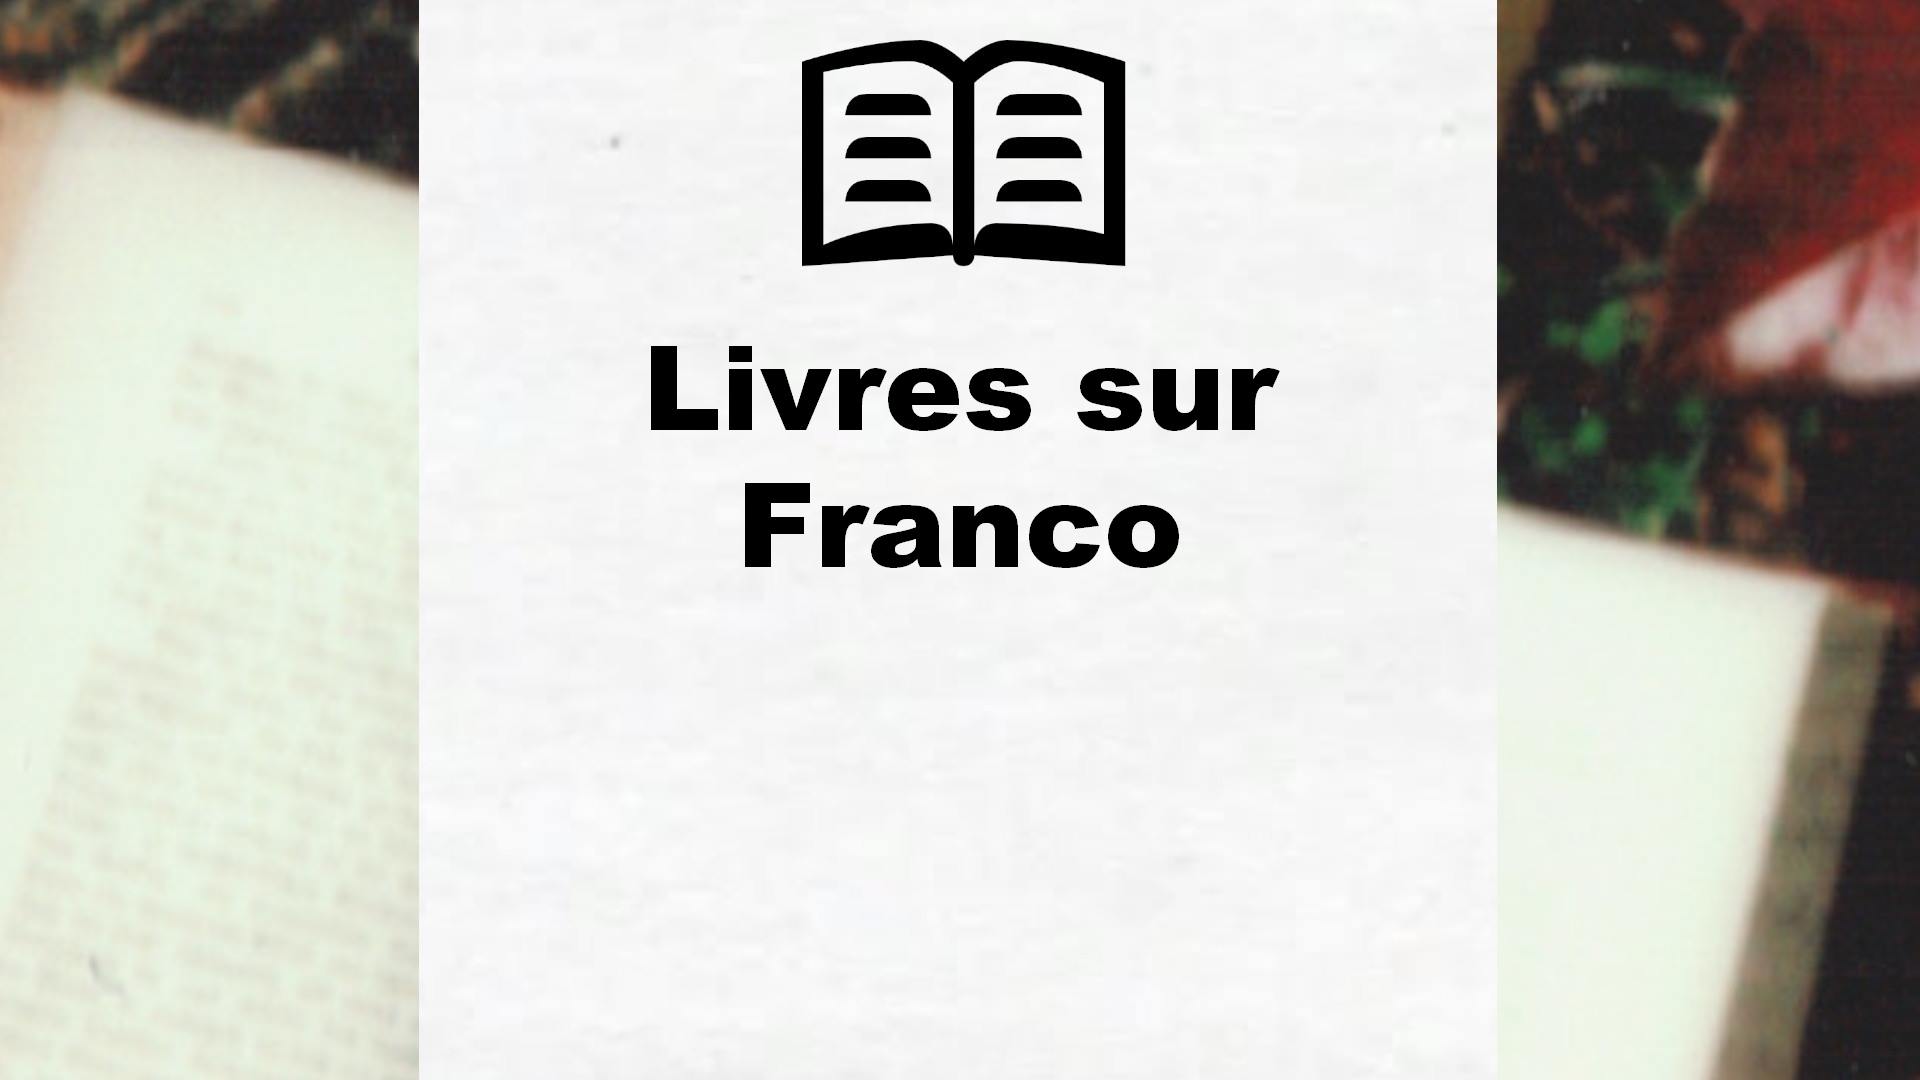 Livres sur Franco